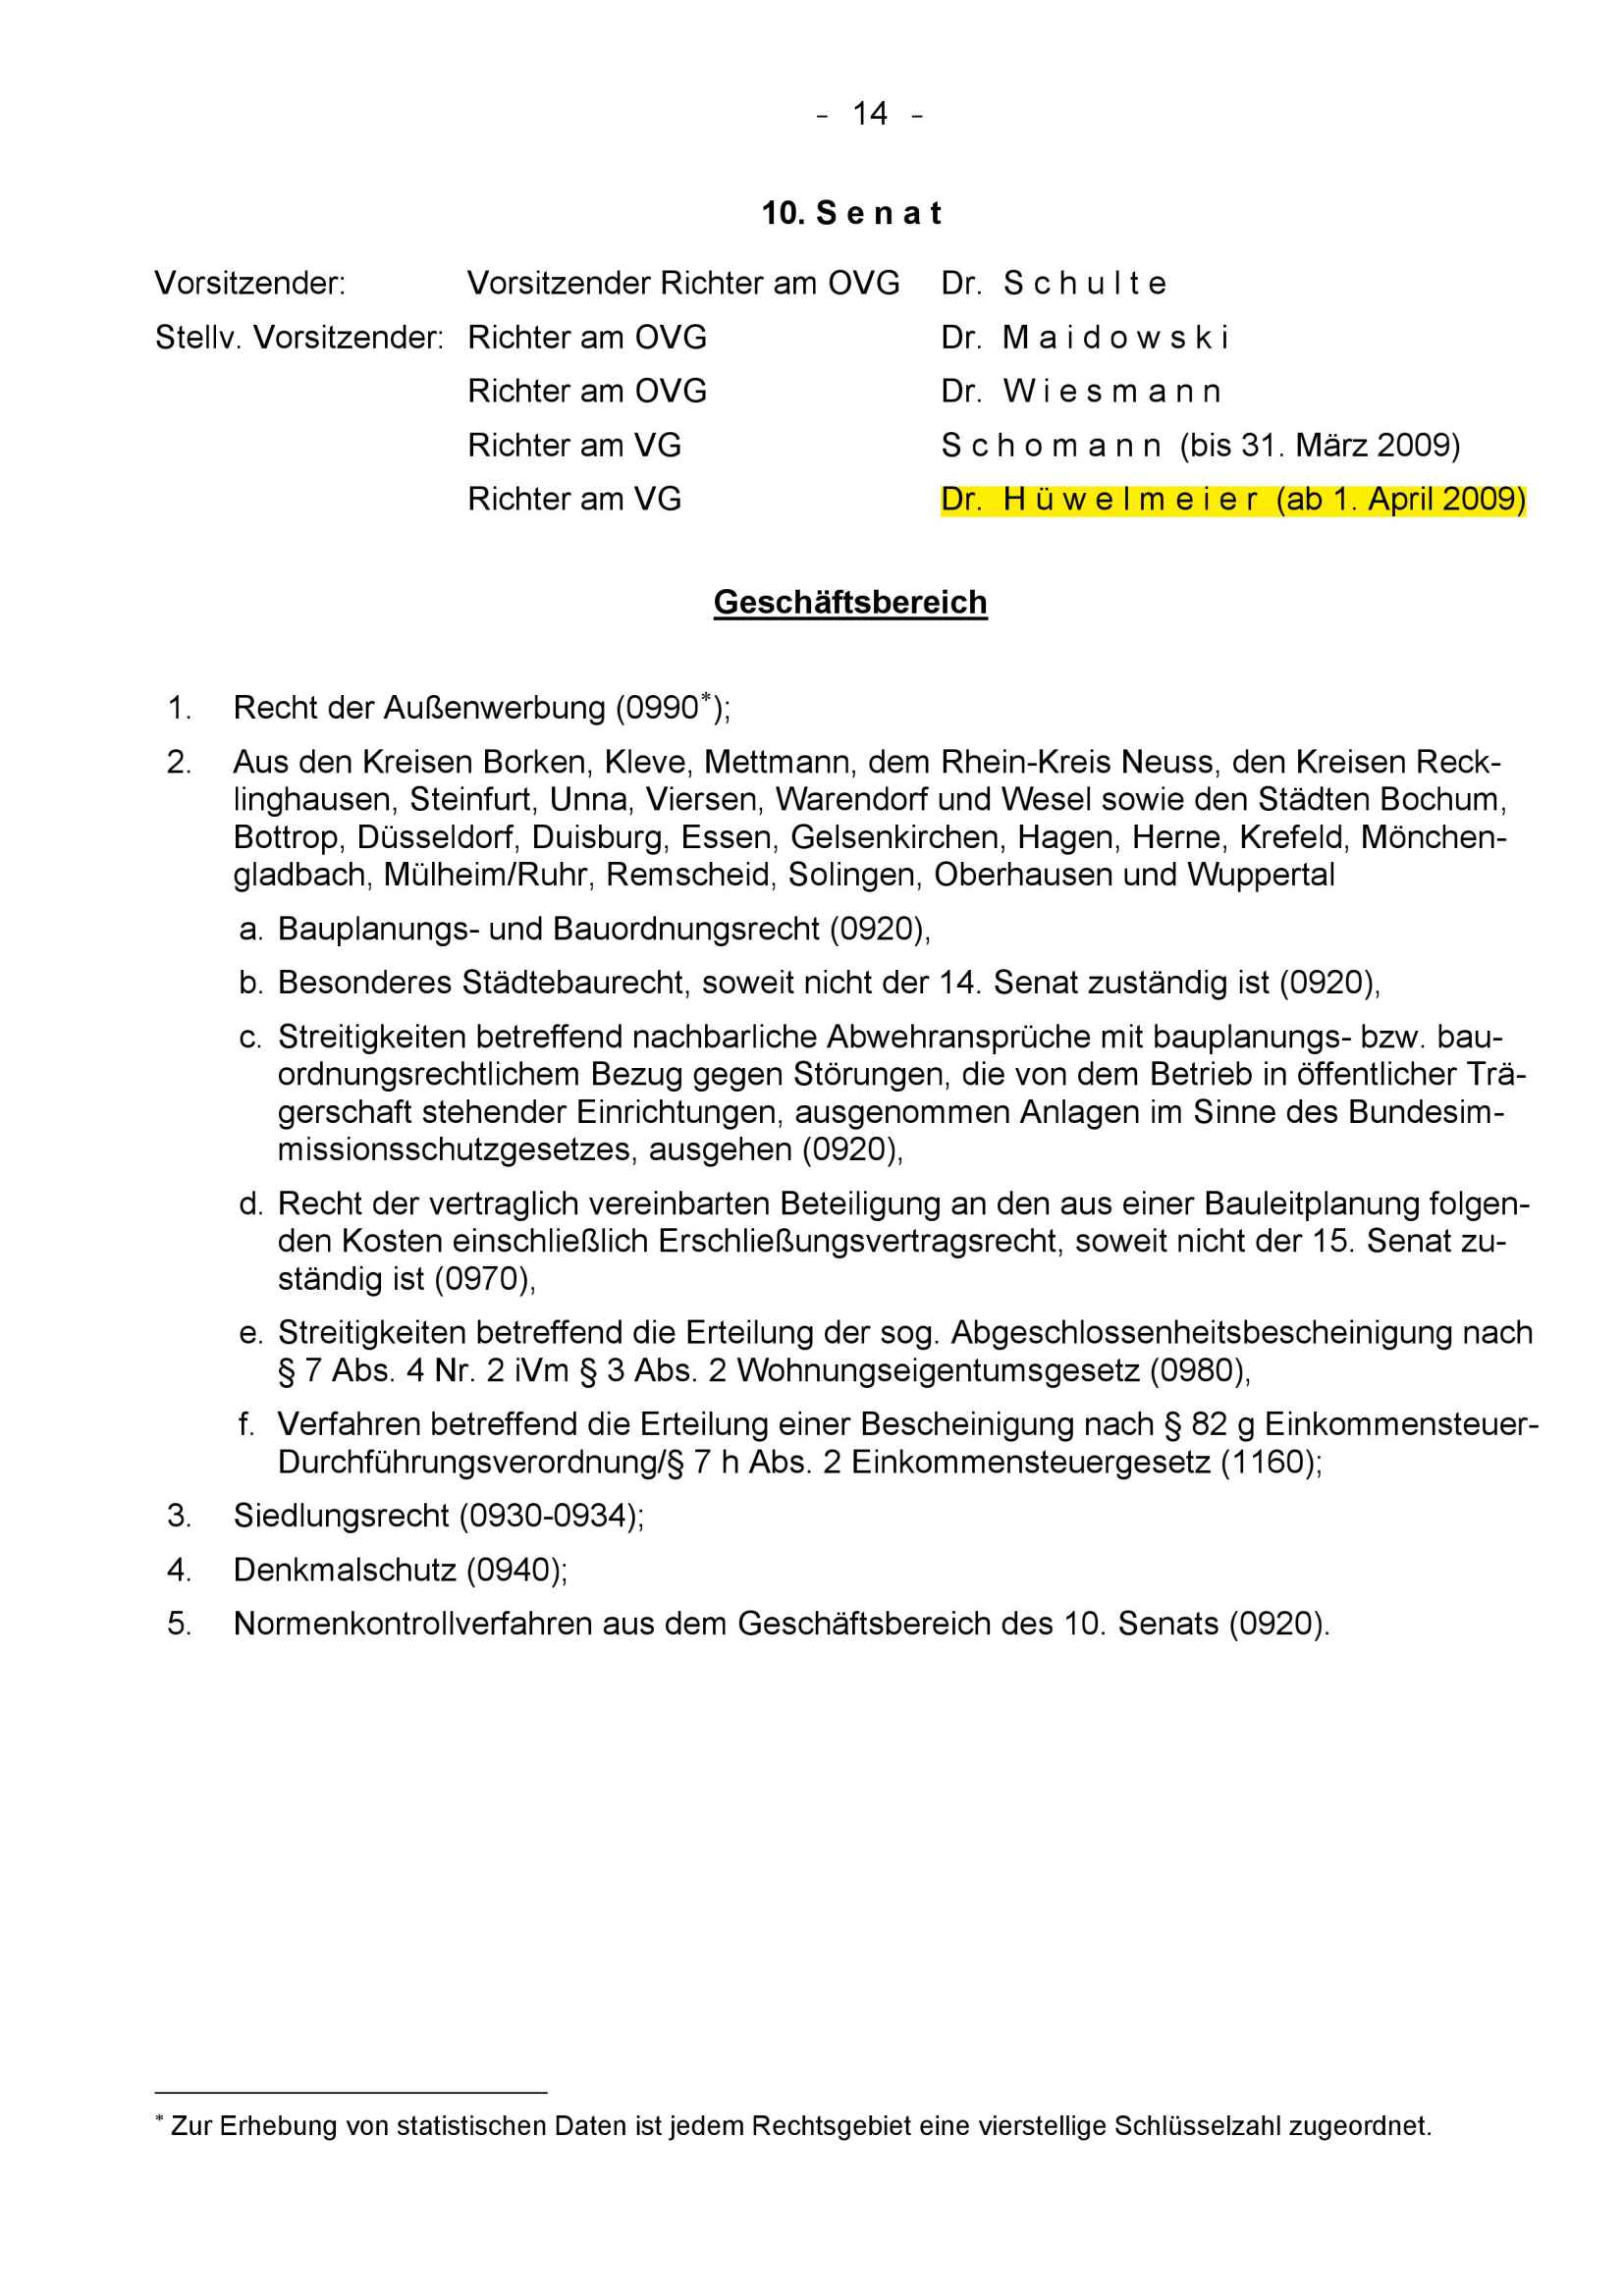 Anlage 1 zu meiner Gegenvorstellung vom 22.08.2009 zum Beschluß der Richter Kuschnerus, Rasche-Sutmeier, Dr. Hüwelmeier vom 03.07.2009